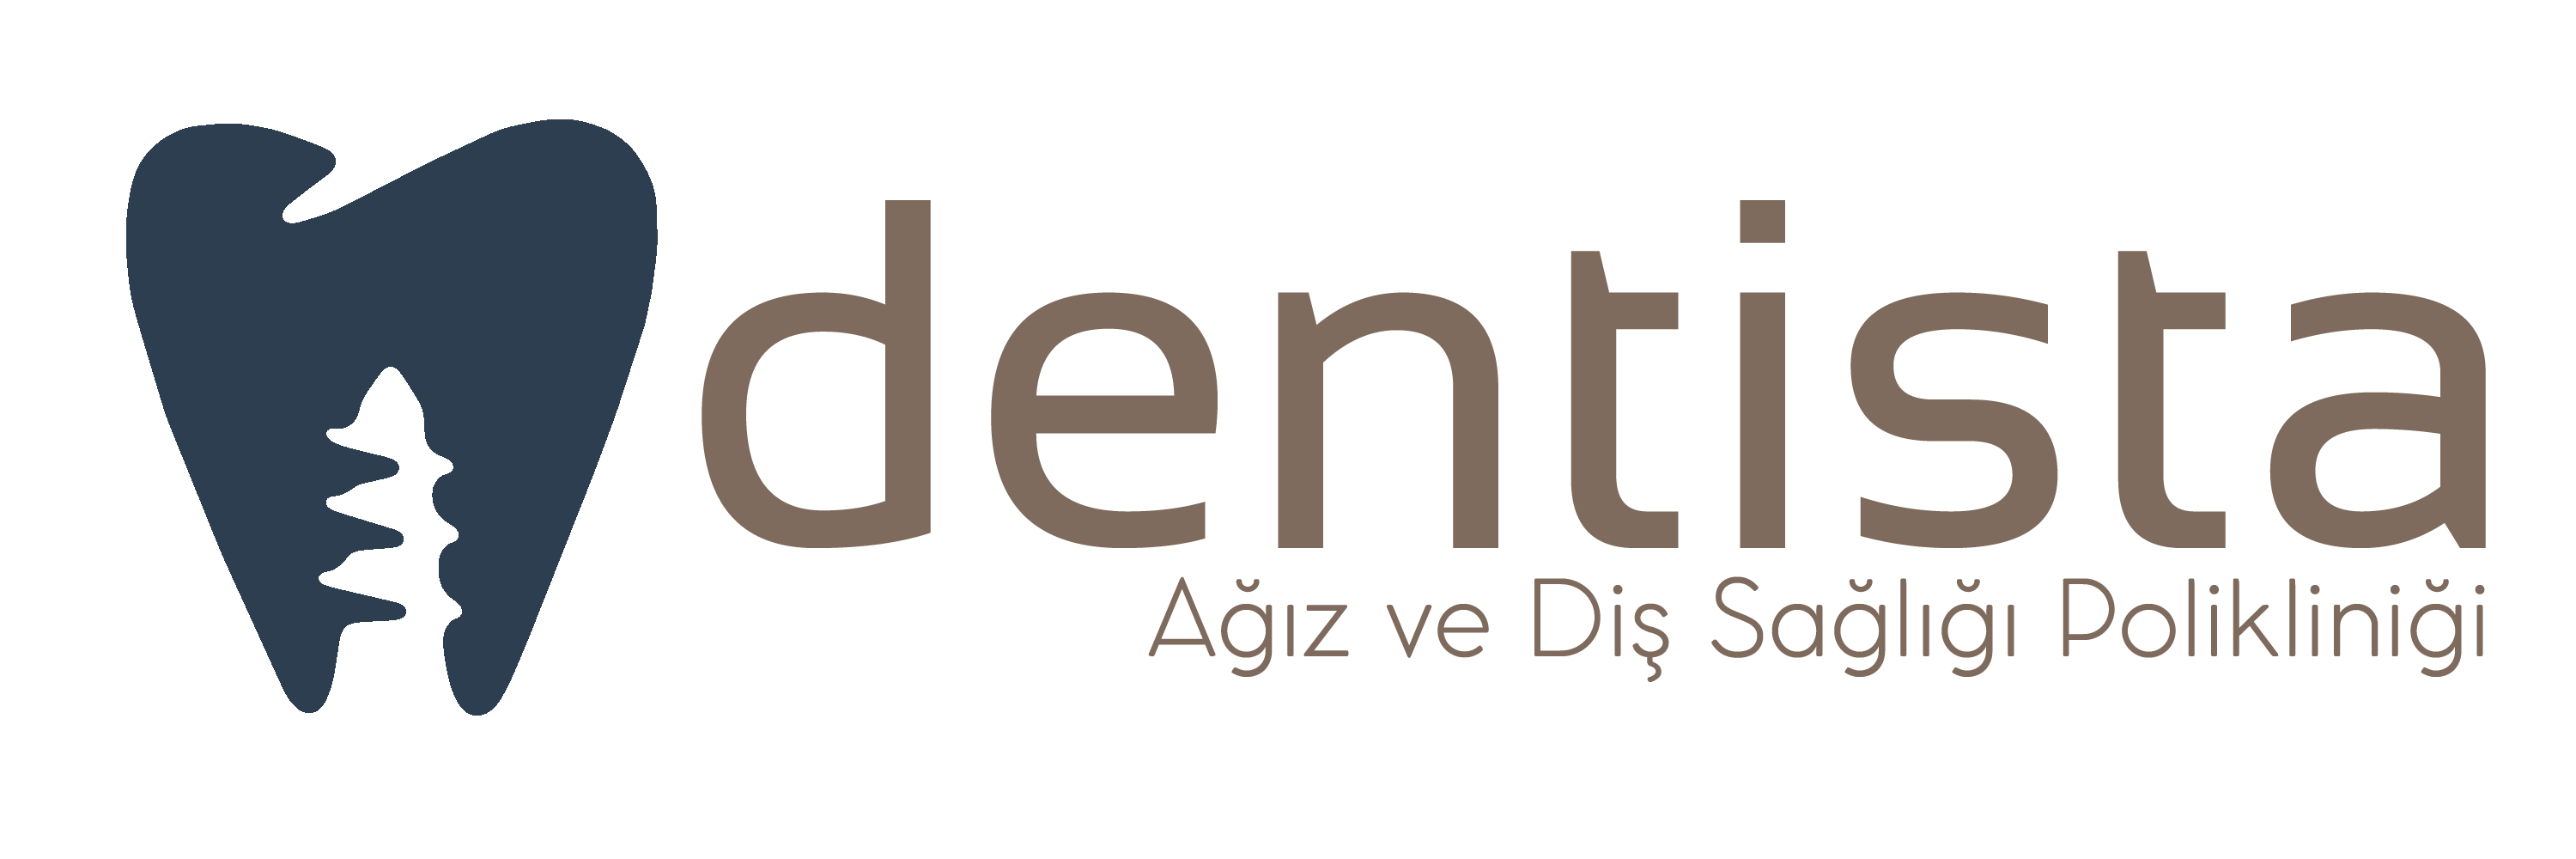 Dentista Ağız ve Diş Sağlığı Polikliniği